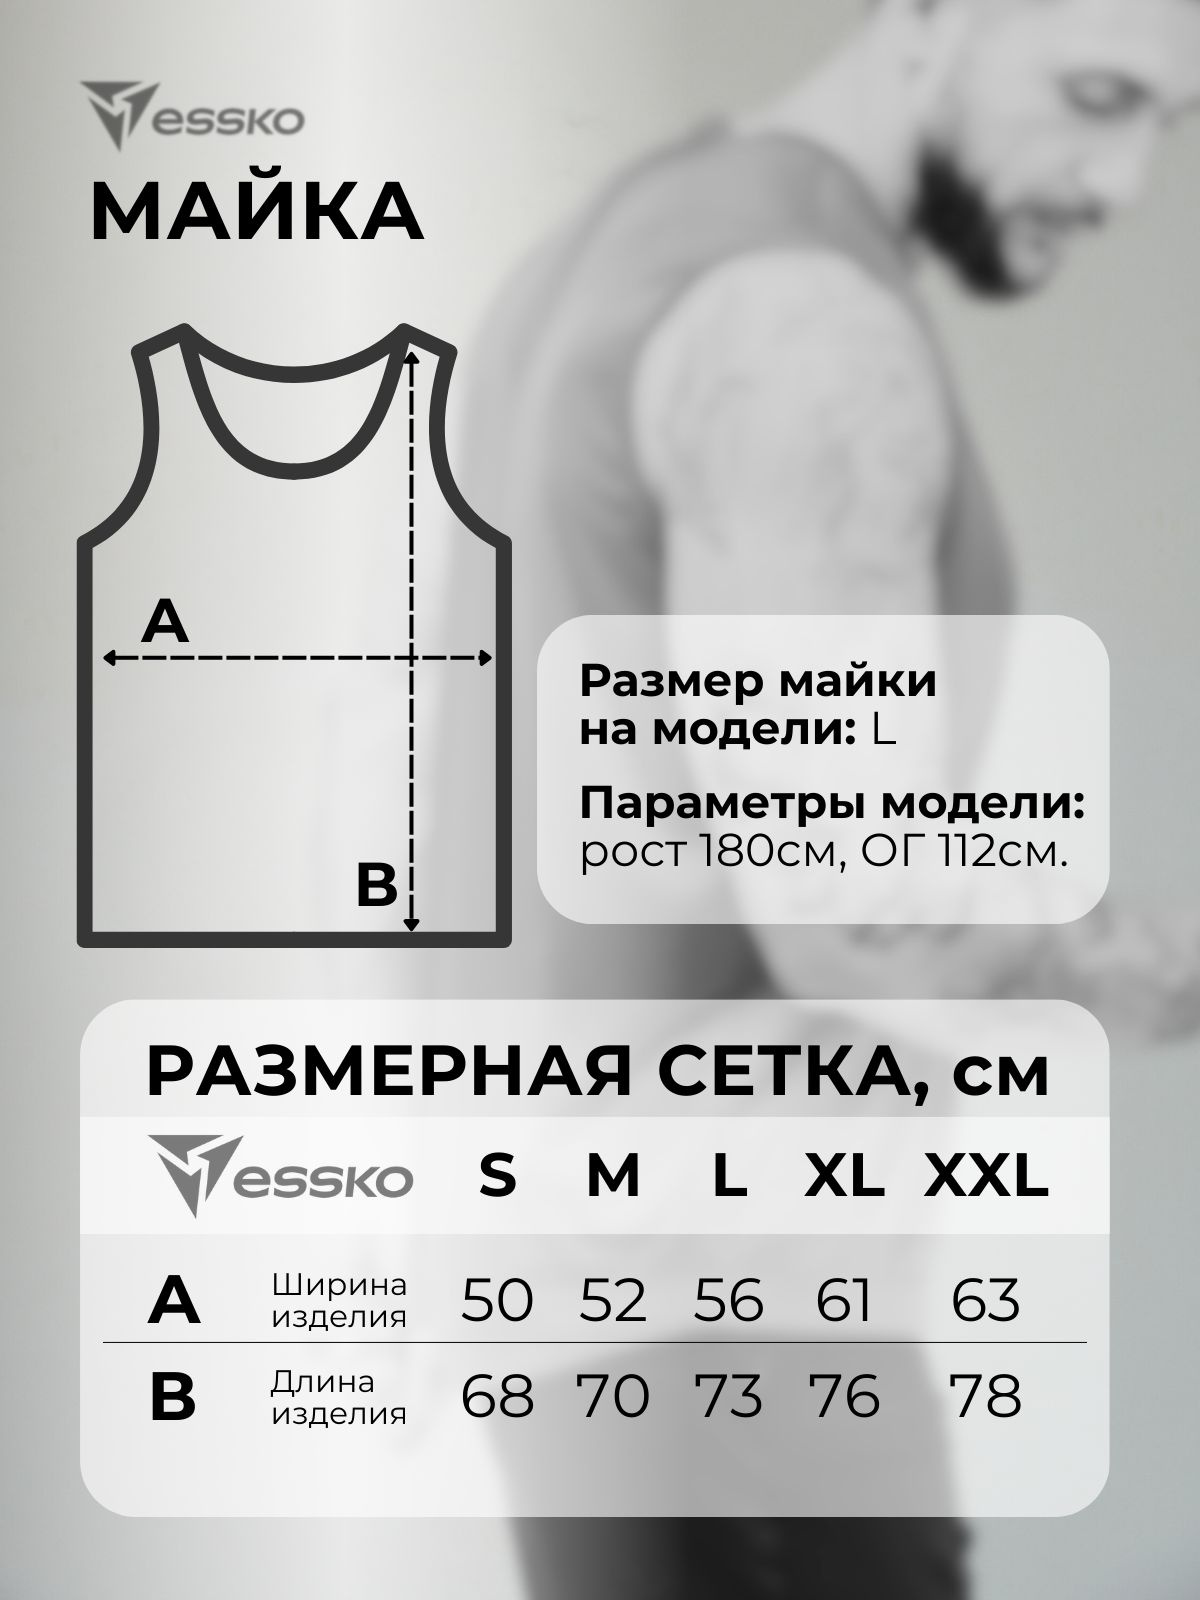 Размеры. Если ты предпочитаешь выбирать одежду по российским размерам, то они соответствуют заявленным, если по европейским, советуем брать на размер больше. Пожалуйста, ориентируйся на нашу сетку! Лайфхак: возьми любимую спортивную майку или футболку, которая устраивает тебя по размерам, измерь ее и, сравнив цифры с нашими, выбери нужный размер. 